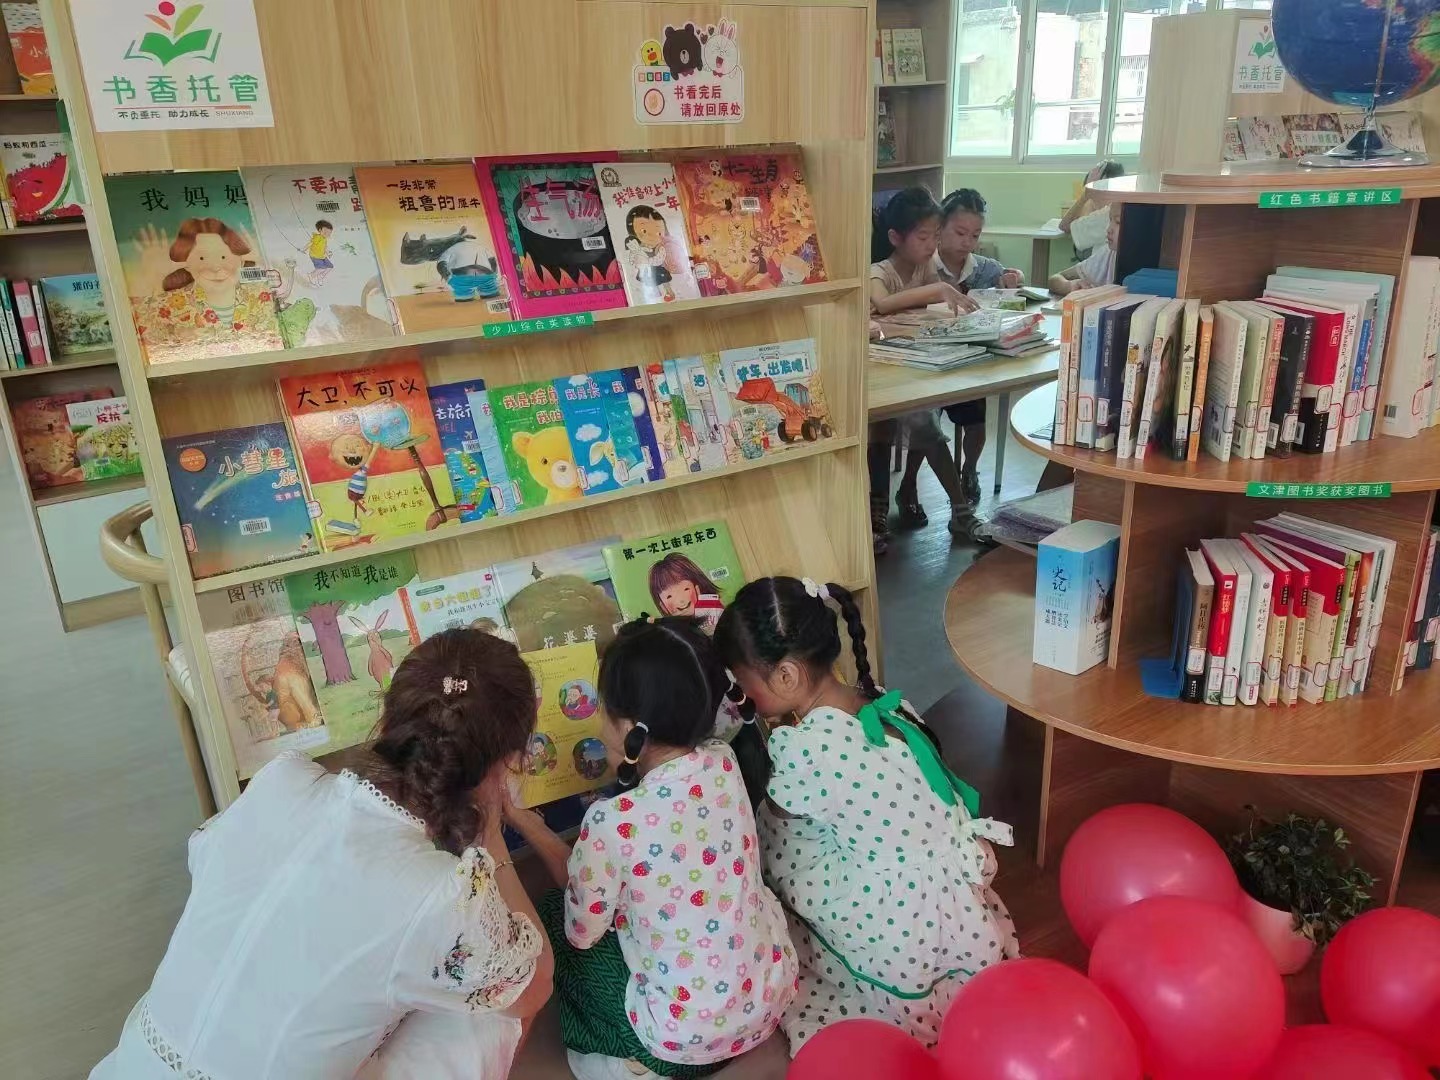 做儿童阅读的引导者 博思韵儿童书店面向全国开放合作